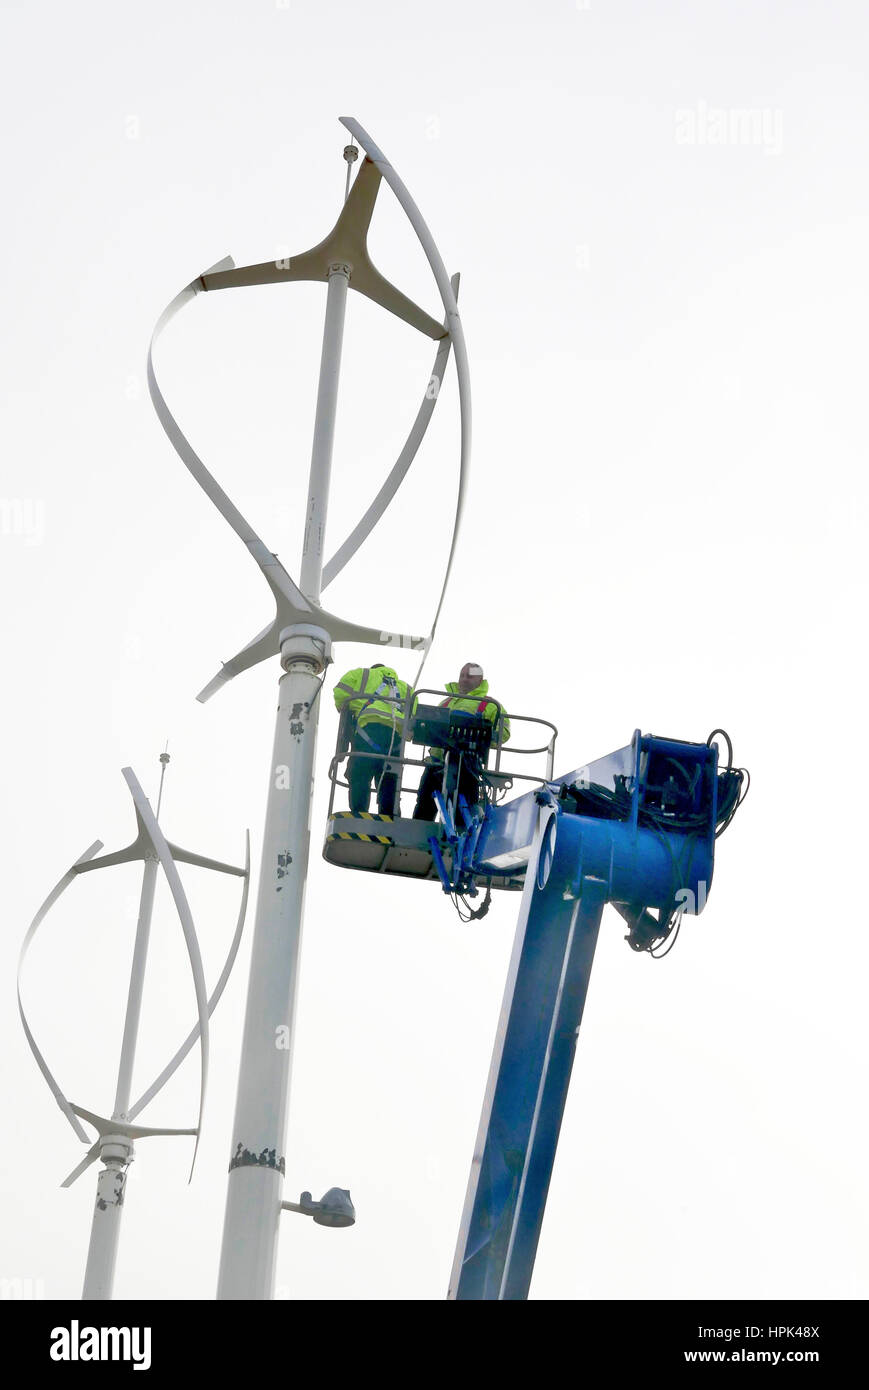 Trabajos de mantenimiento en el aerogenerador de eje vertical, Lancashire, Reino Unido Foto de stock